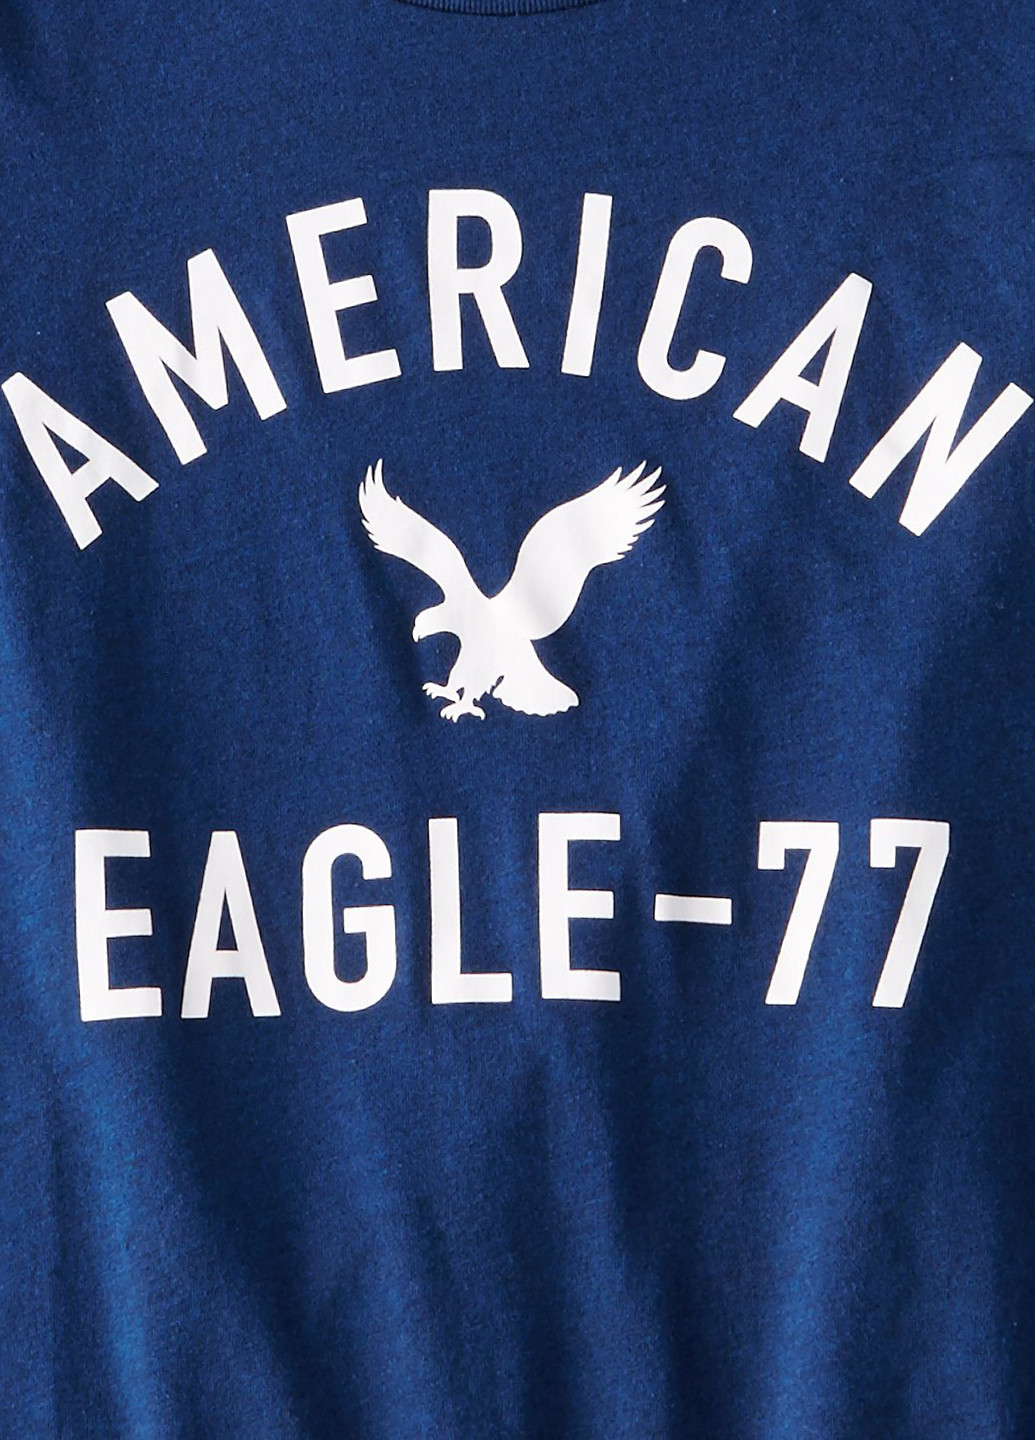 Темно-синя футболка American Eagle